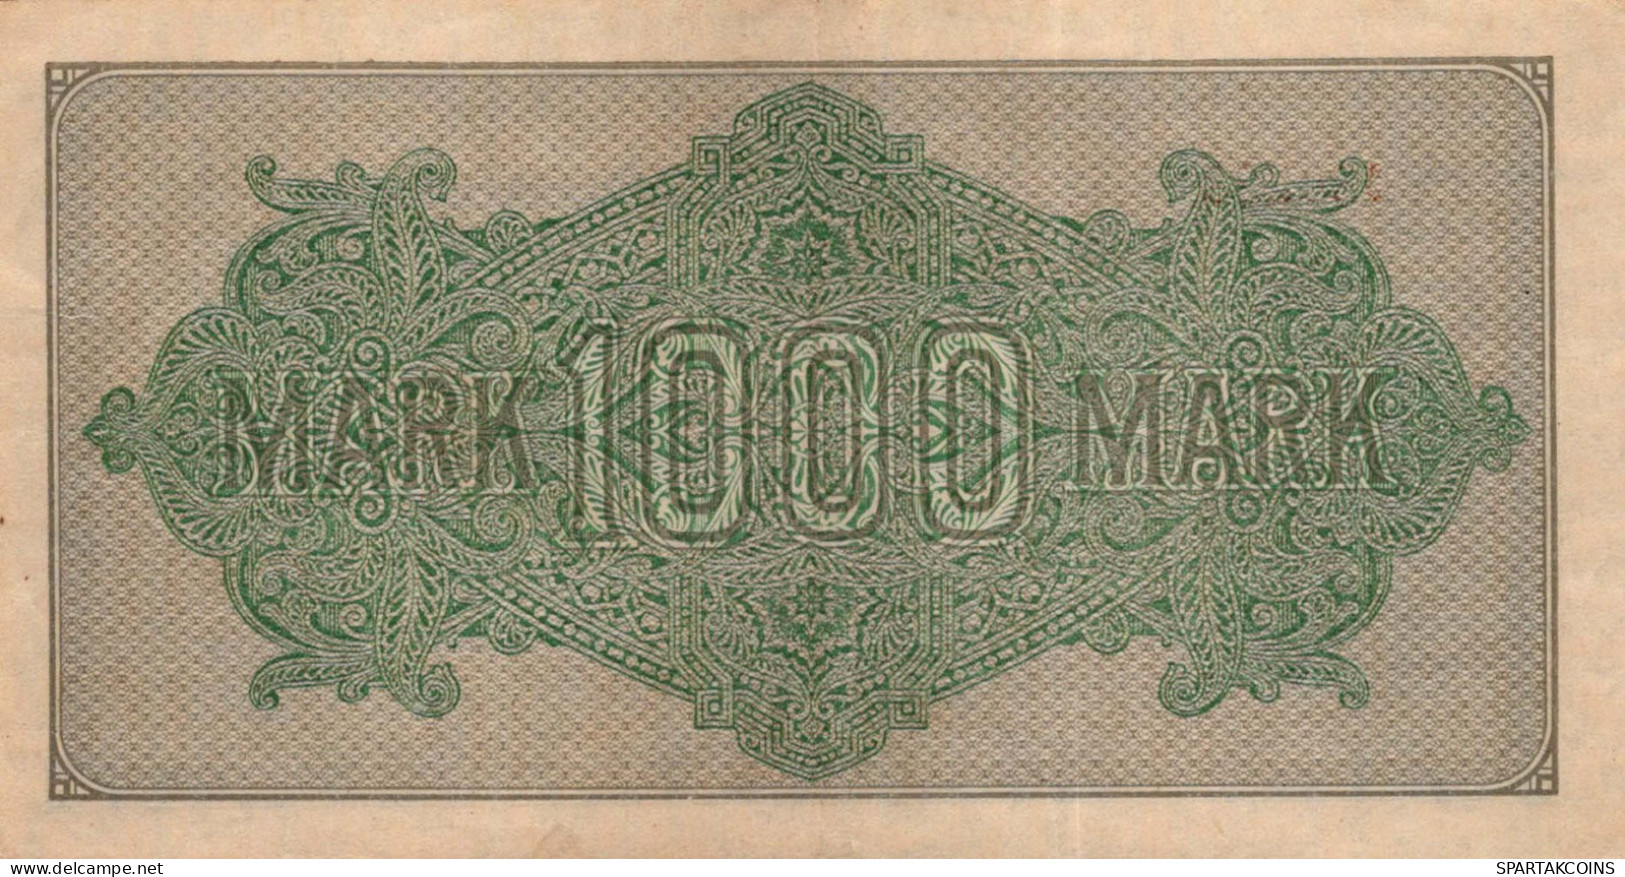 1000 MARK 1922 Stadt BERLIN DEUTSCHLAND Papiergeld Banknote #PL398 - [11] Local Banknote Issues